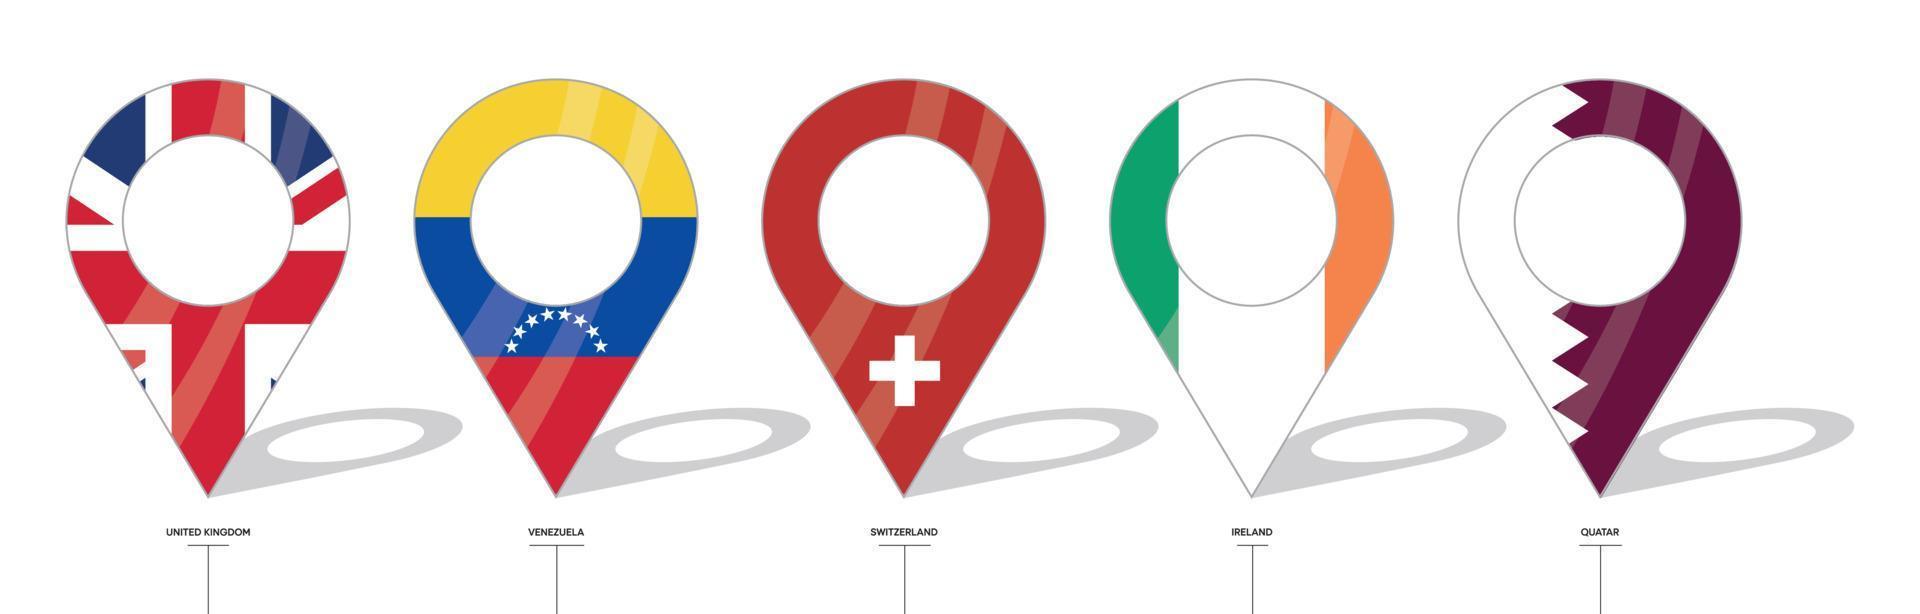 sinal de localização da bandeira do país. ícones de bandeira do reino unido, venezuela, suíça, irlanda e catar. bandeiras de países com check-ins. ícone de vetor de formas simples de ponto de localização.